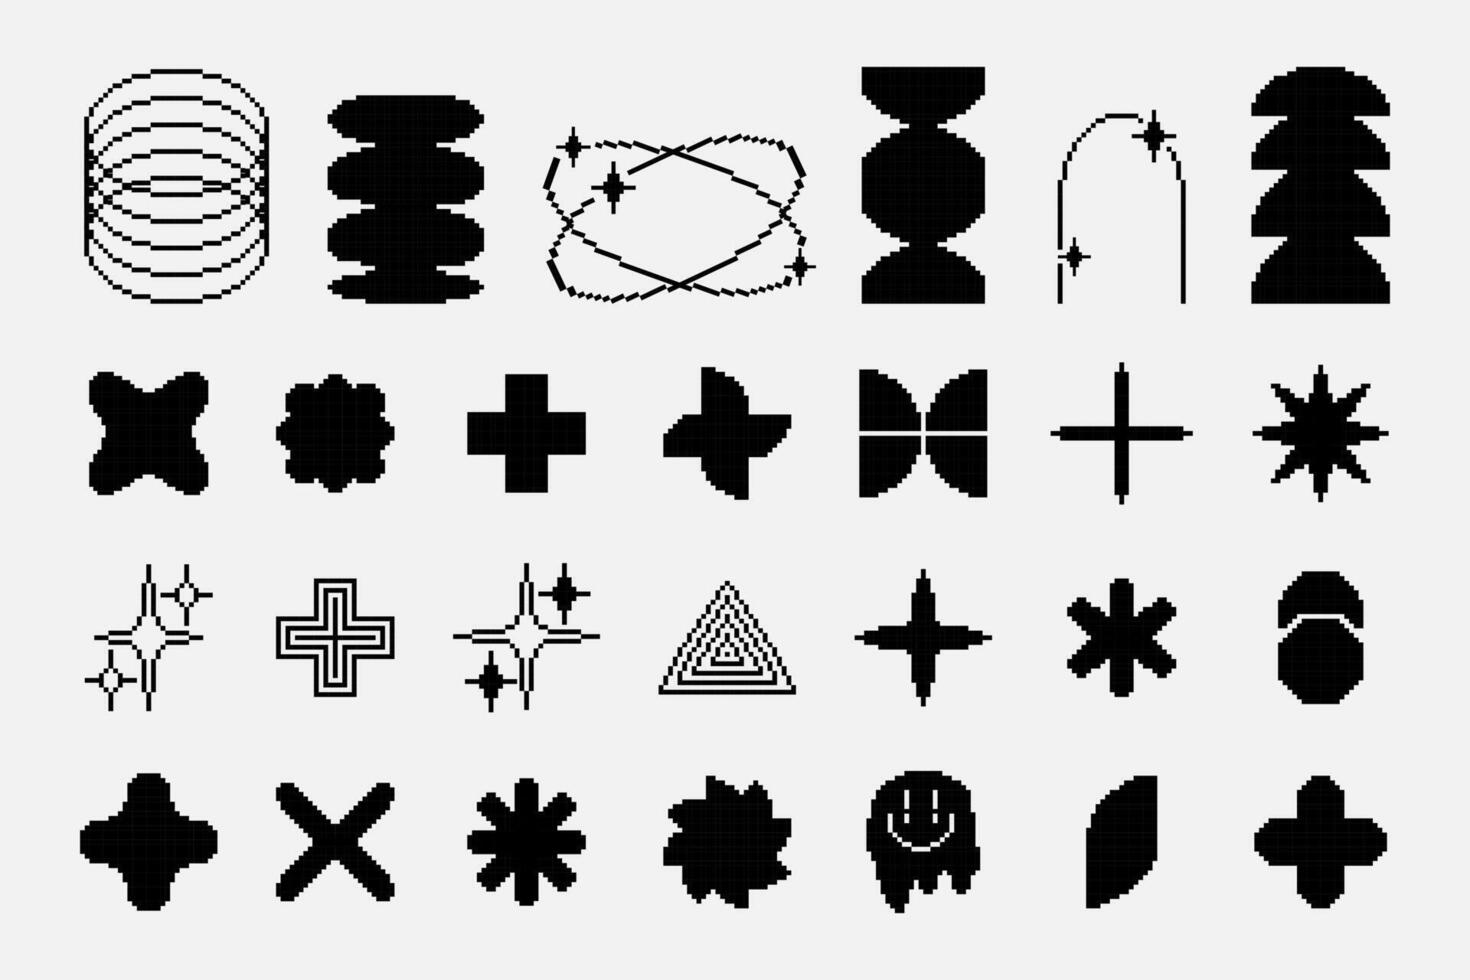 conjunto de resumen retro geométrico formas píxel art.8 bits, brutal contemporáneo figura estrella oval flor y otro primitivo elementos. negro y blanco monocromo estilo . vector ilustración eps 10